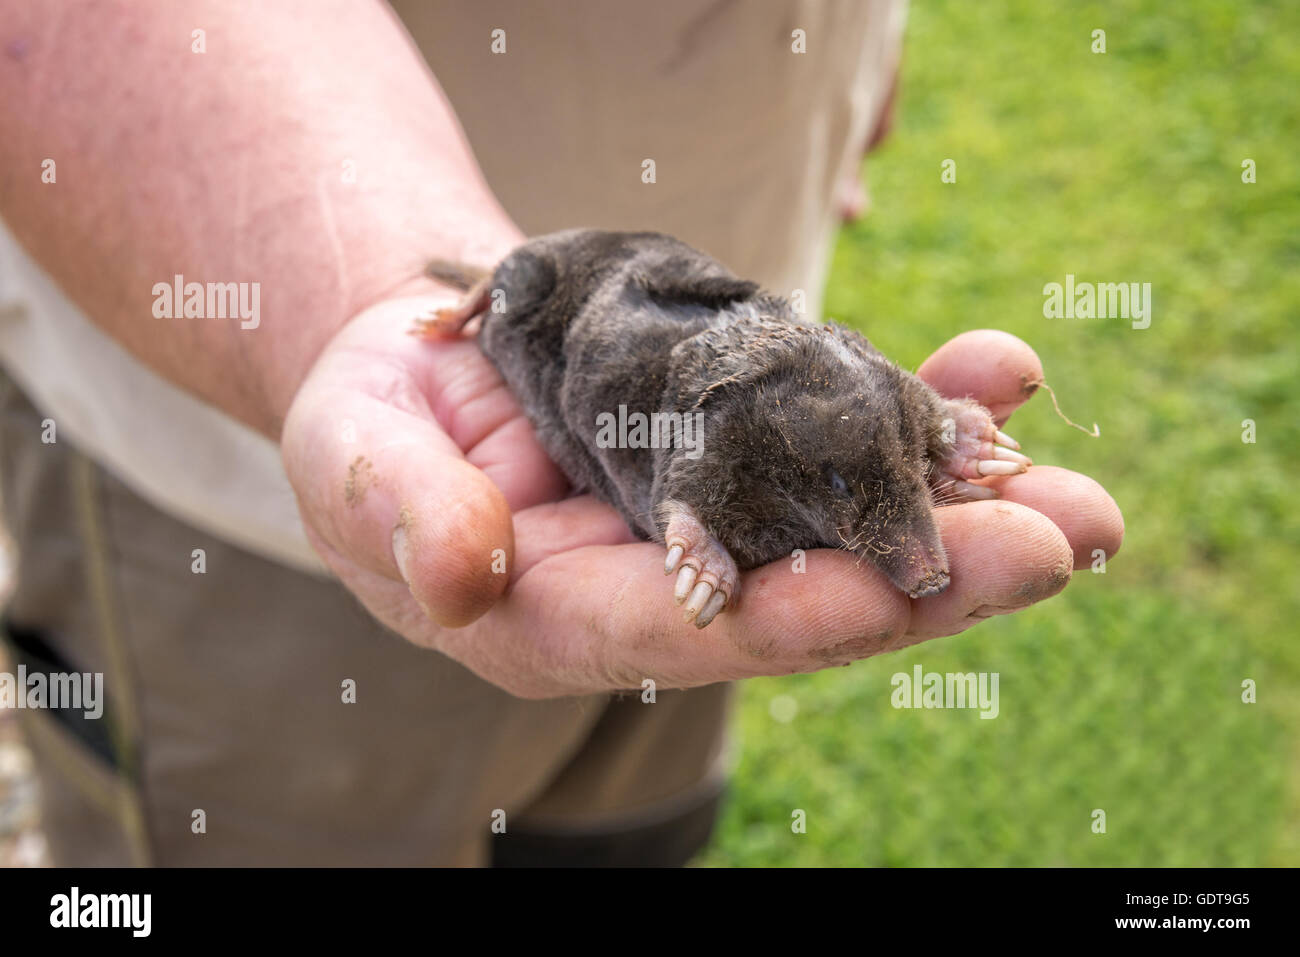 Dead mole dans une main, jardin contexte Banque D'Images